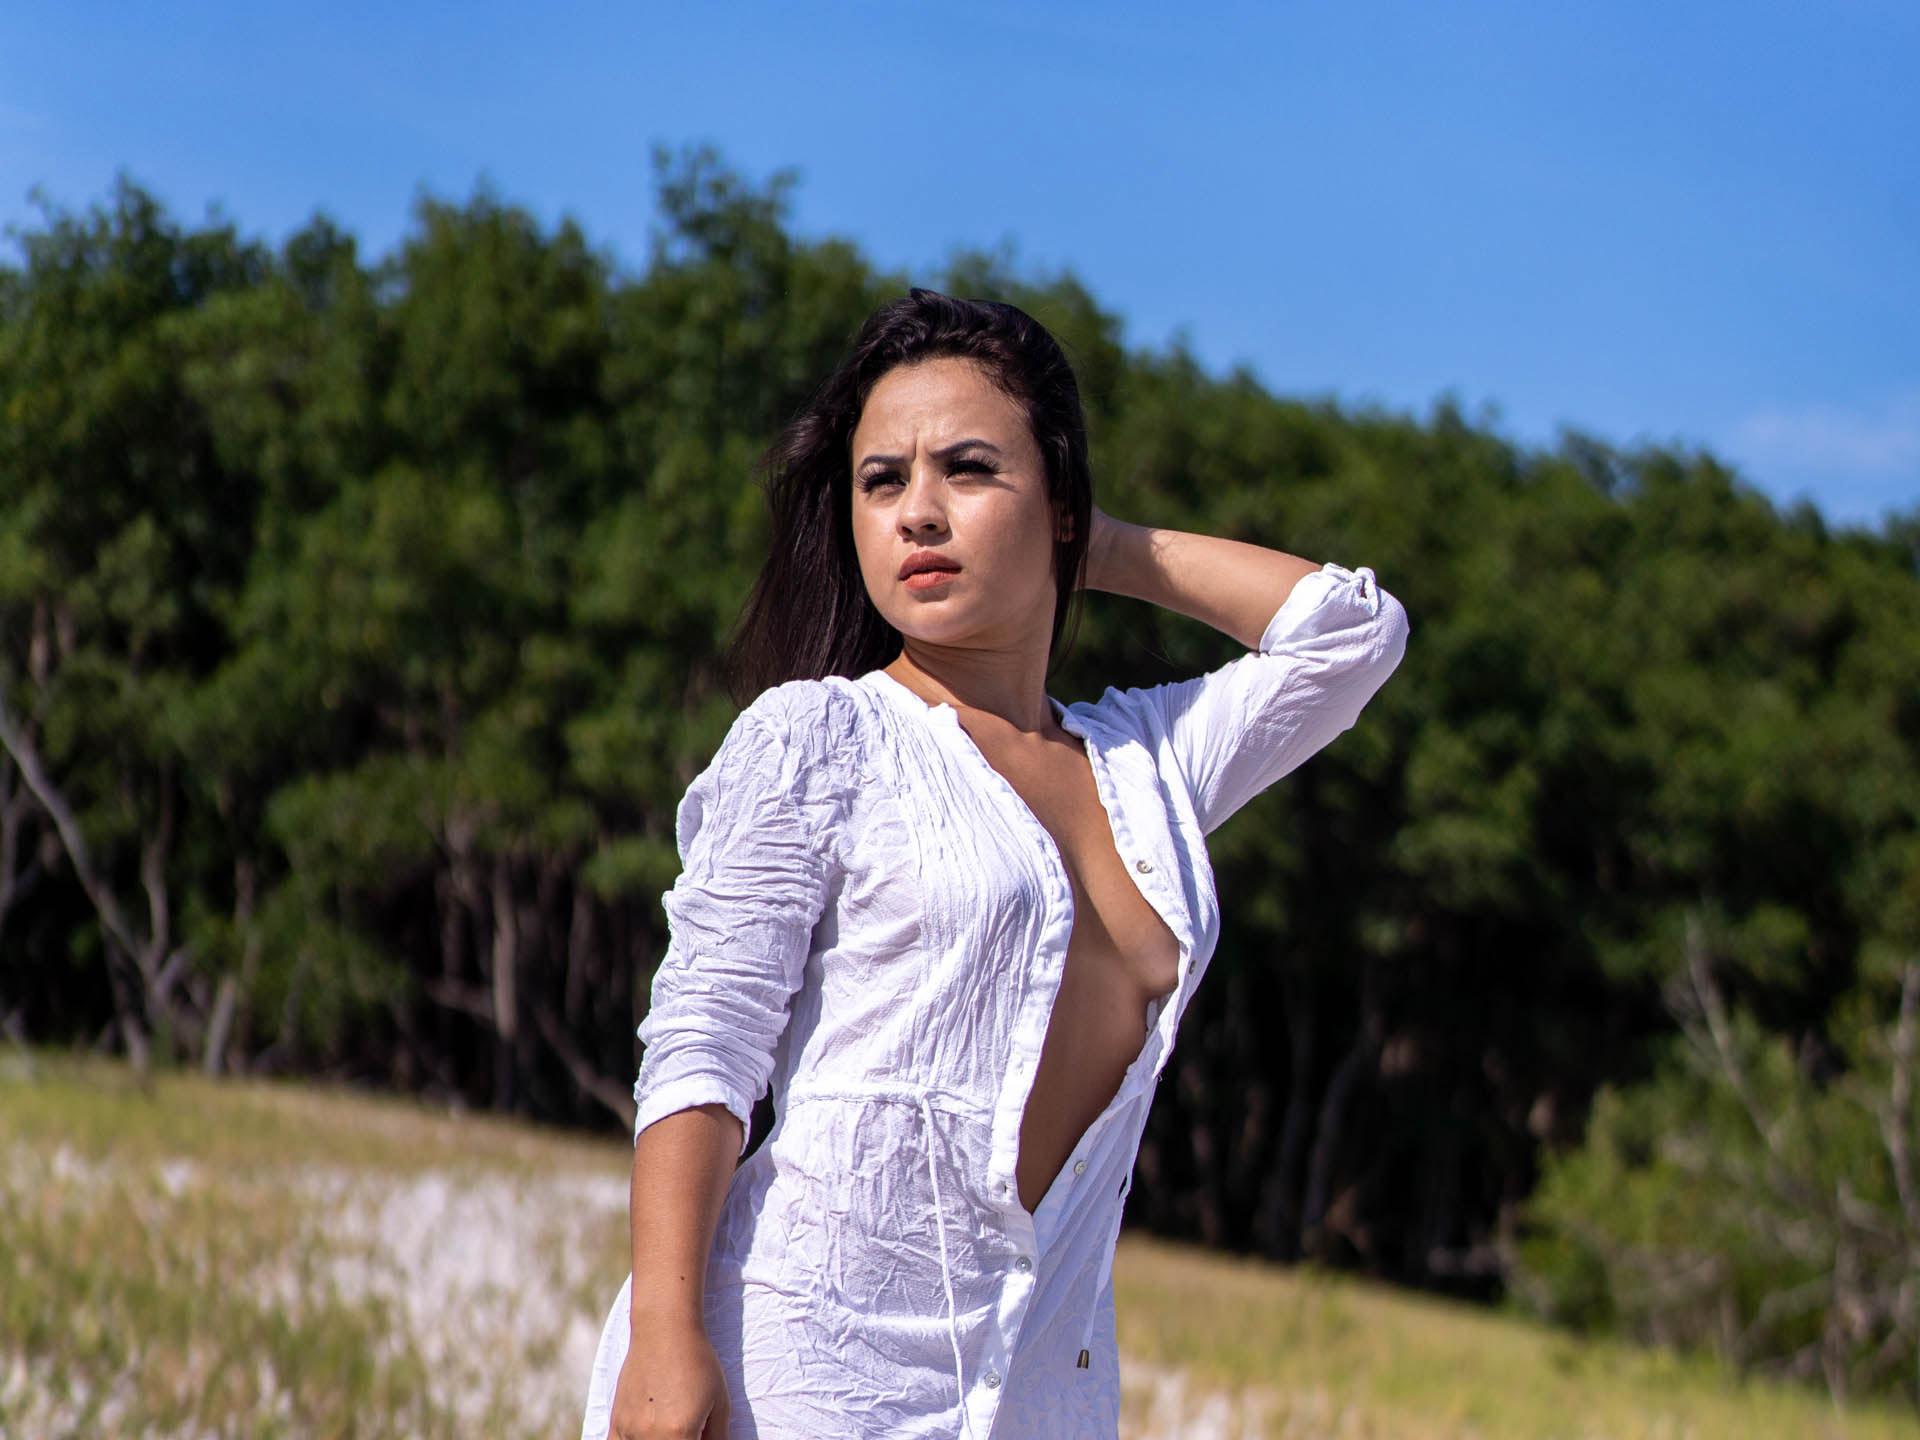 ensaio fotografico sensual com modelo nua se blusão branco em meio a natureza com ceu azul